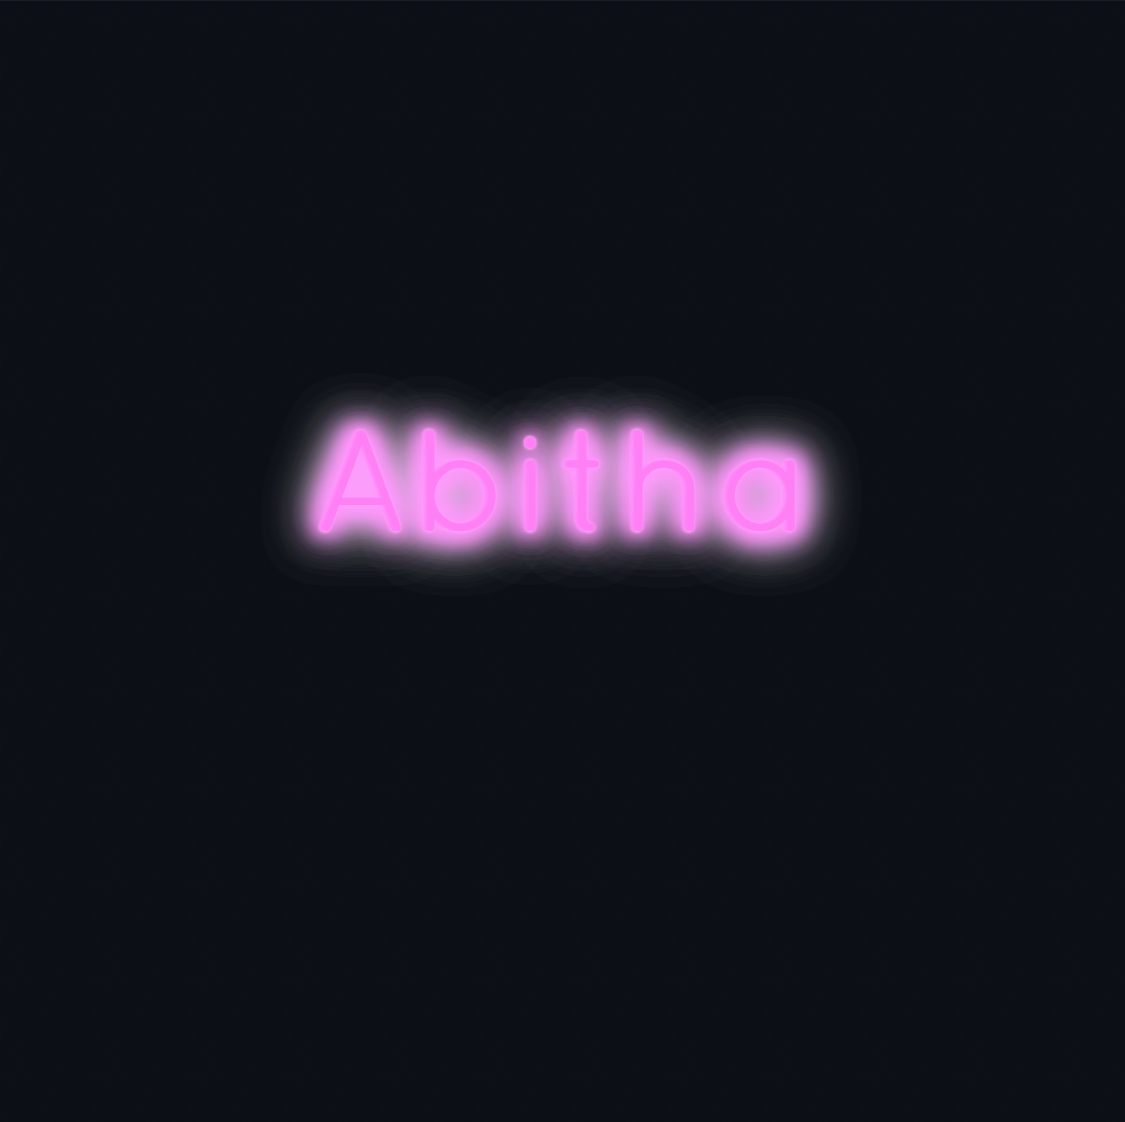 Custom neon sign - Abitha